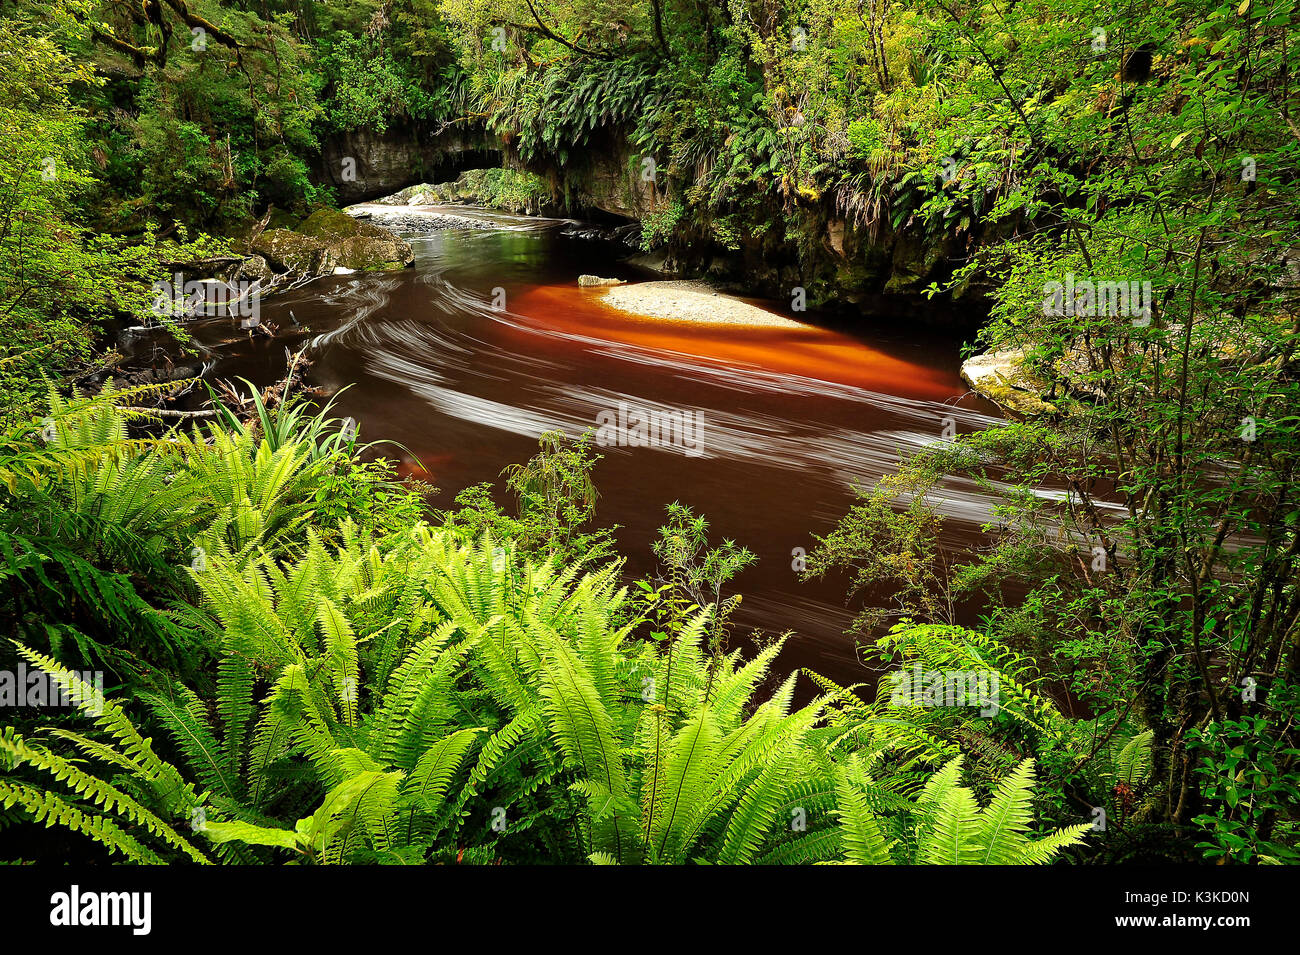 Die upite Becken Bögen sind ein Ort von Interesse mit dem idyllischen Dorf karamea an der Westküste der Südinsel von Neuseeland. Braunes Wasser mit weißer Schaum schlängelt sich durch dichten tropischen Dschungel unter den berühmten upite rock Bögen Stockfoto